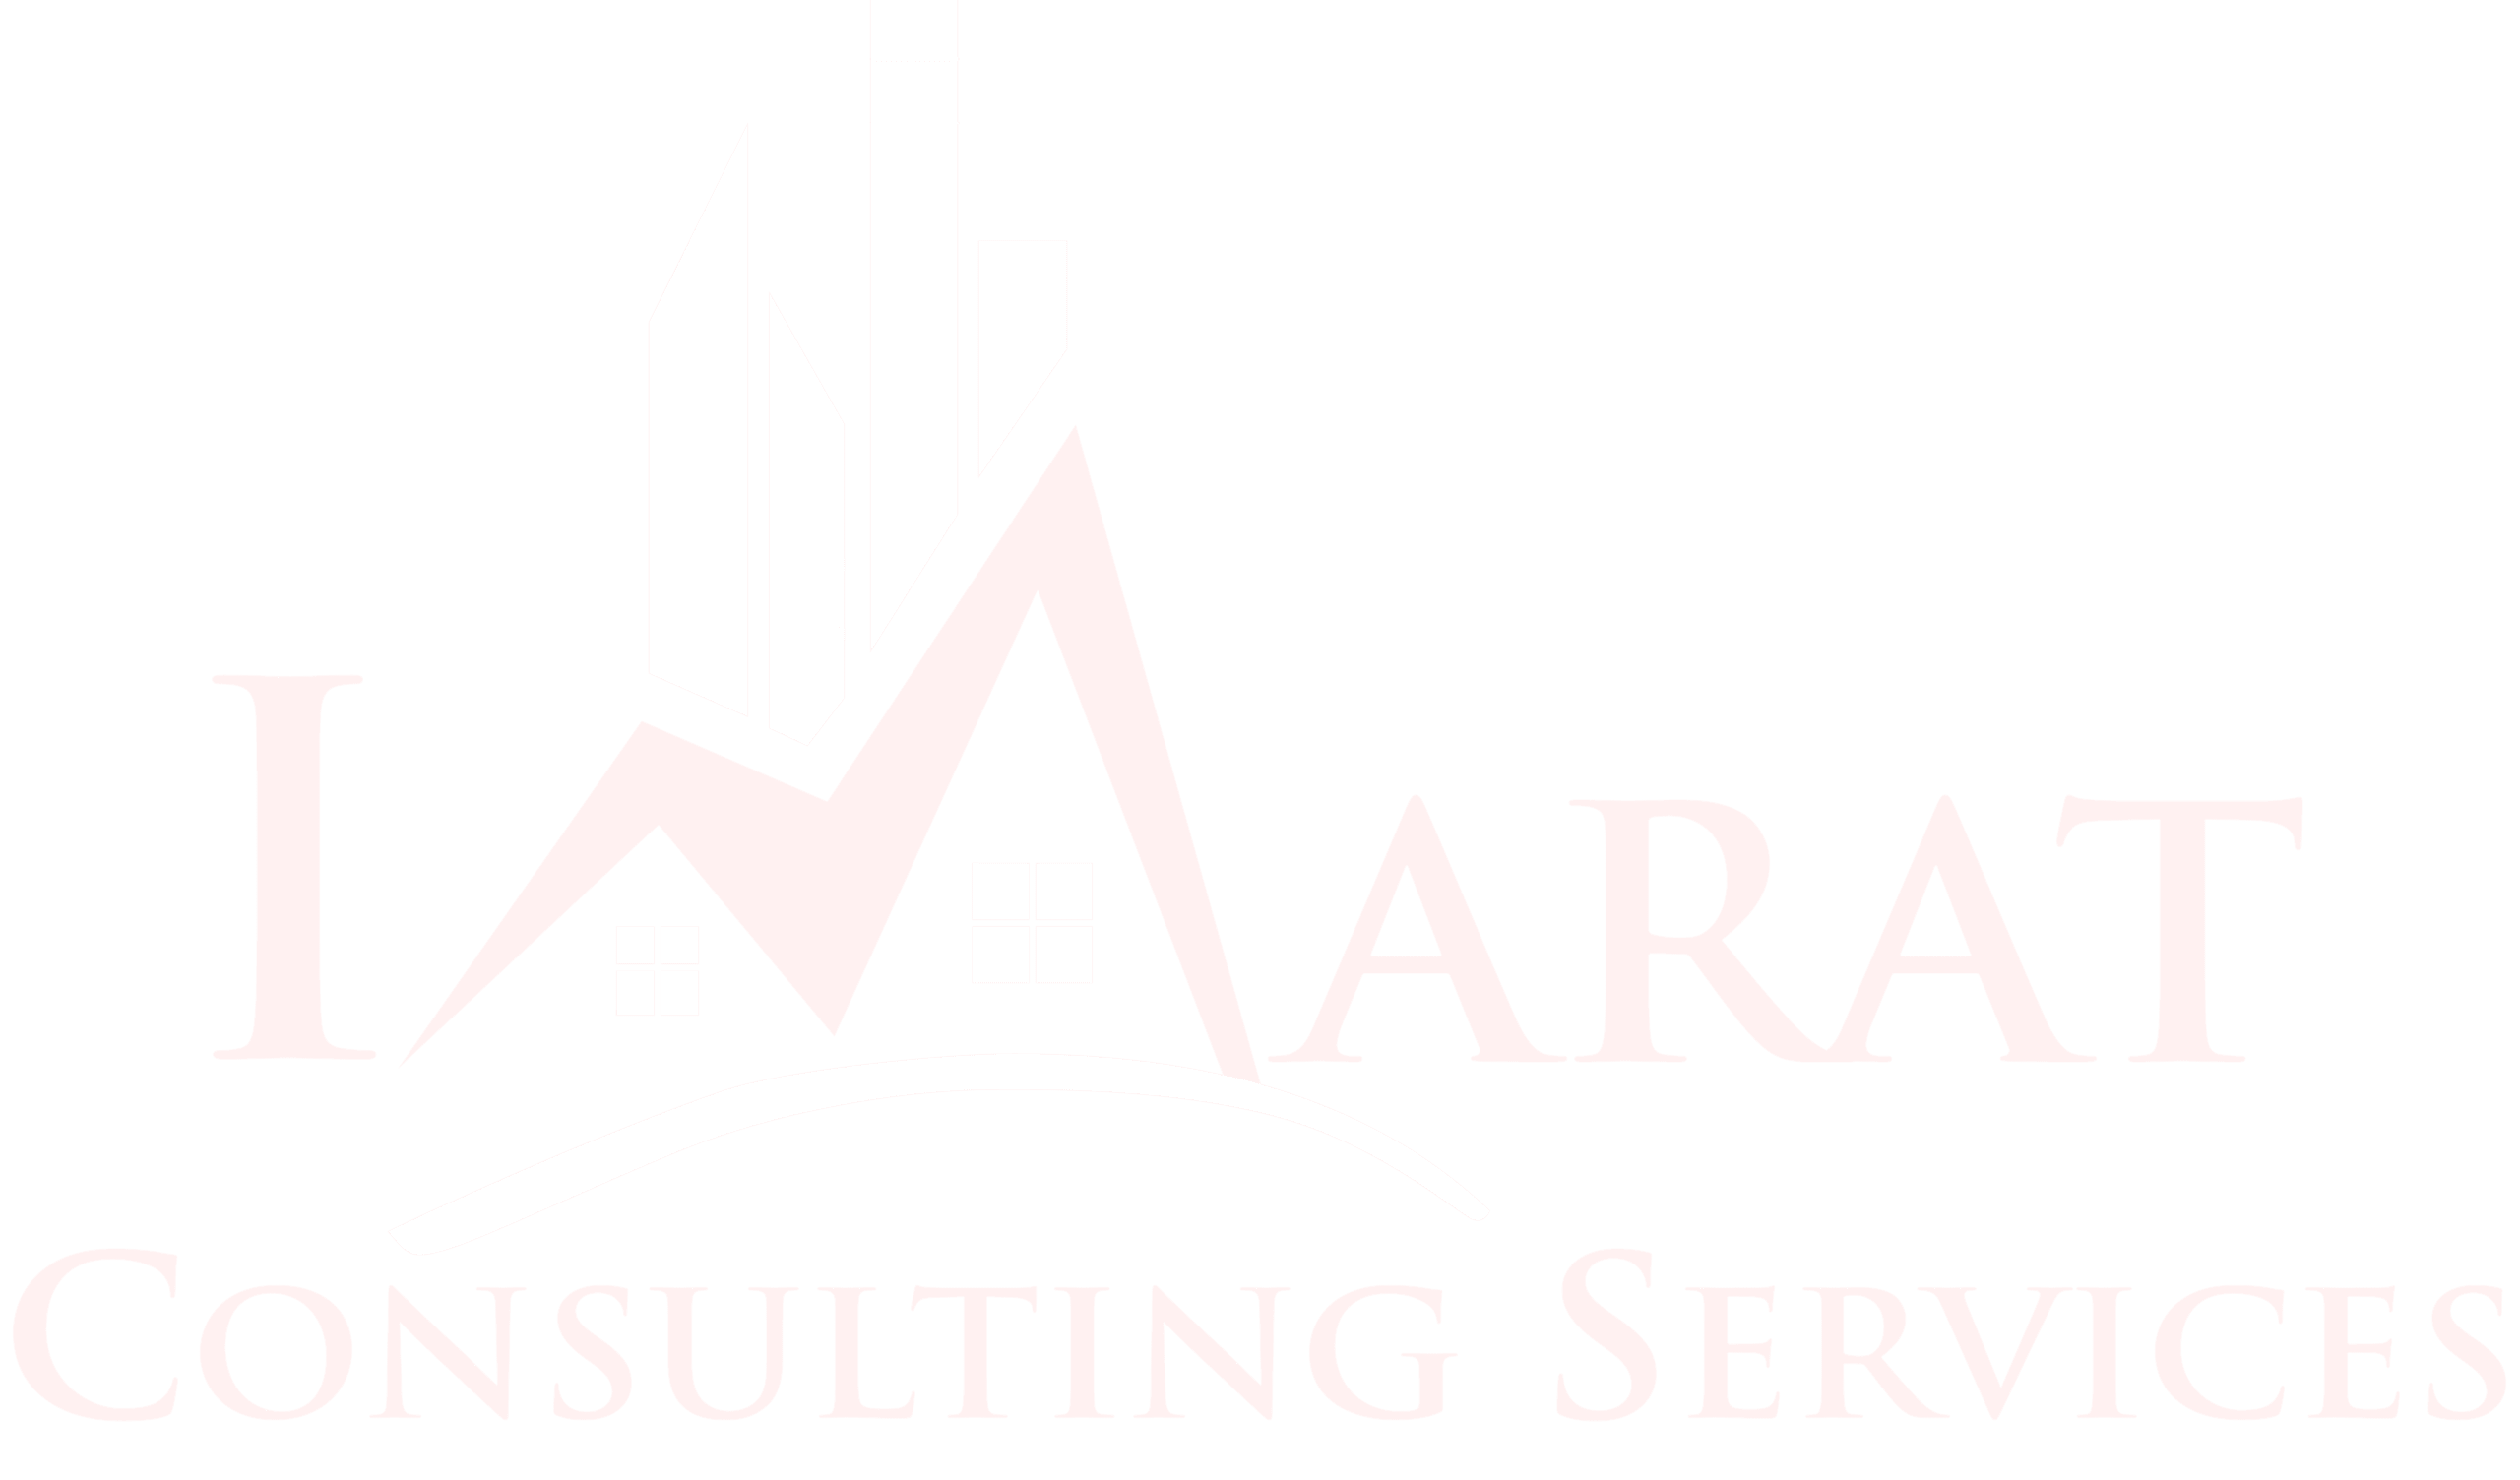 Imarat Consulting Services - Designing The Future Civil Engineers